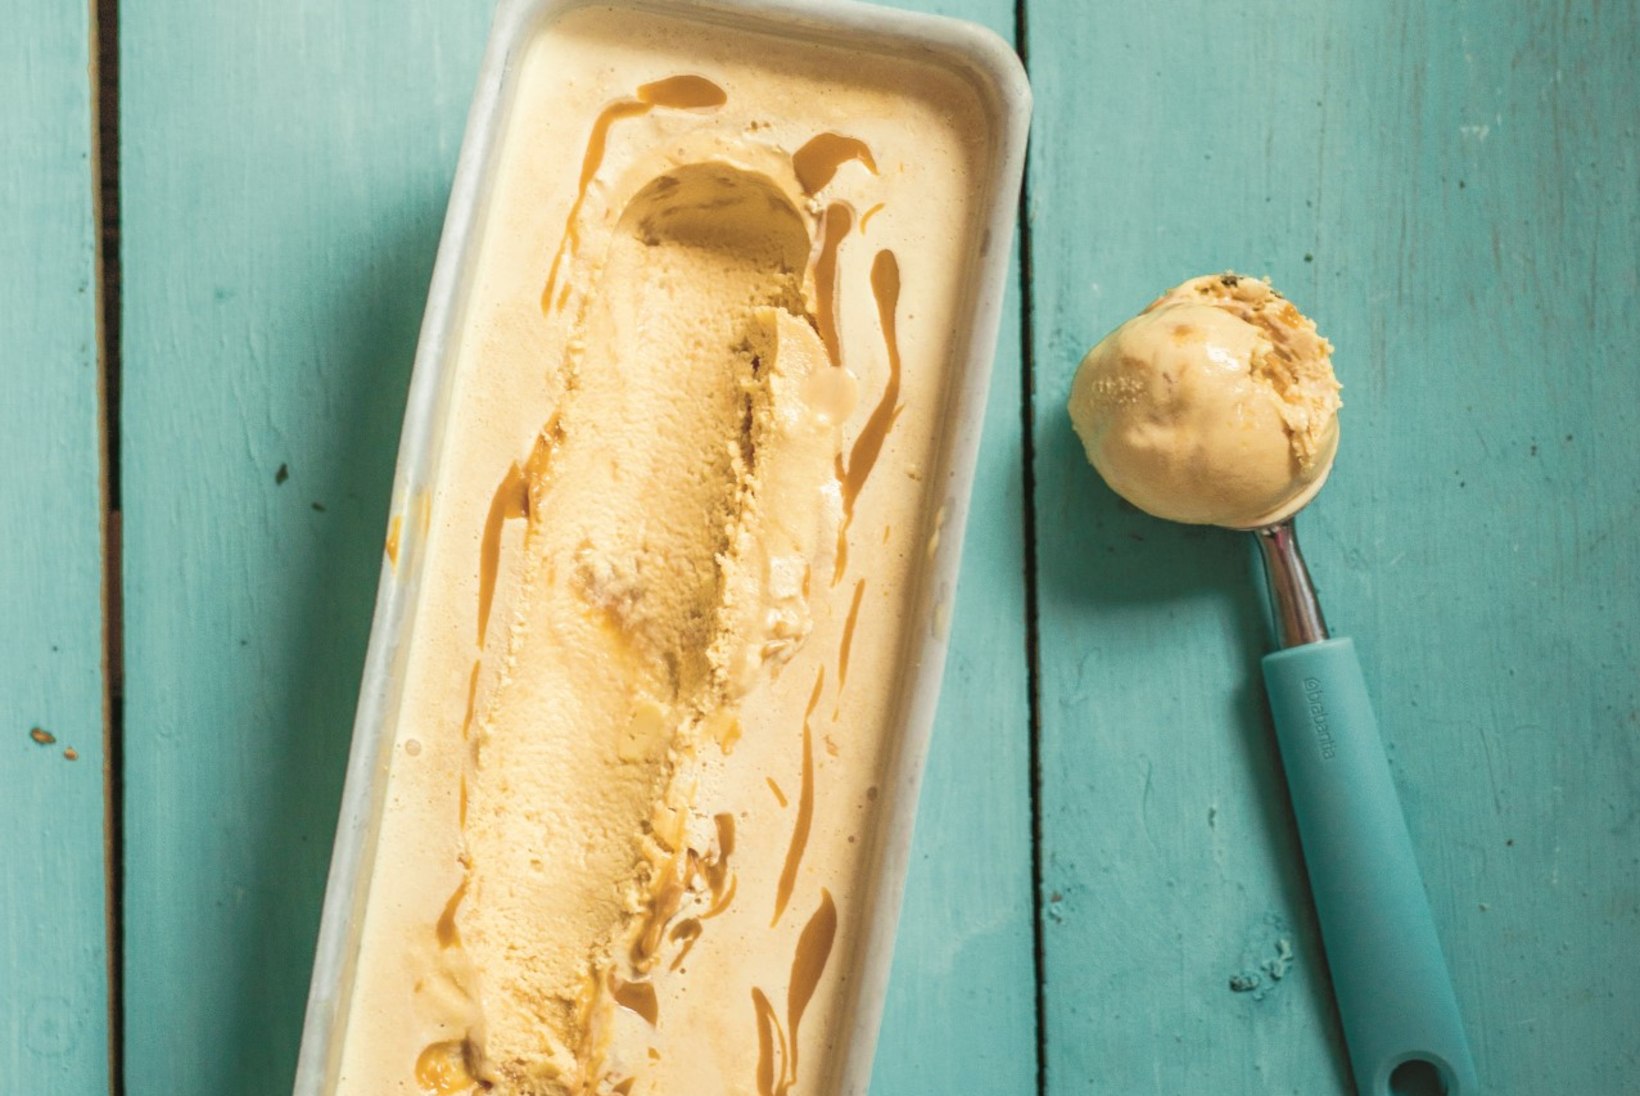 RETSEPT | See ehe koore-karamellijäätis pöörab sind jäädavalt koduse jäätise valmistamise usku!